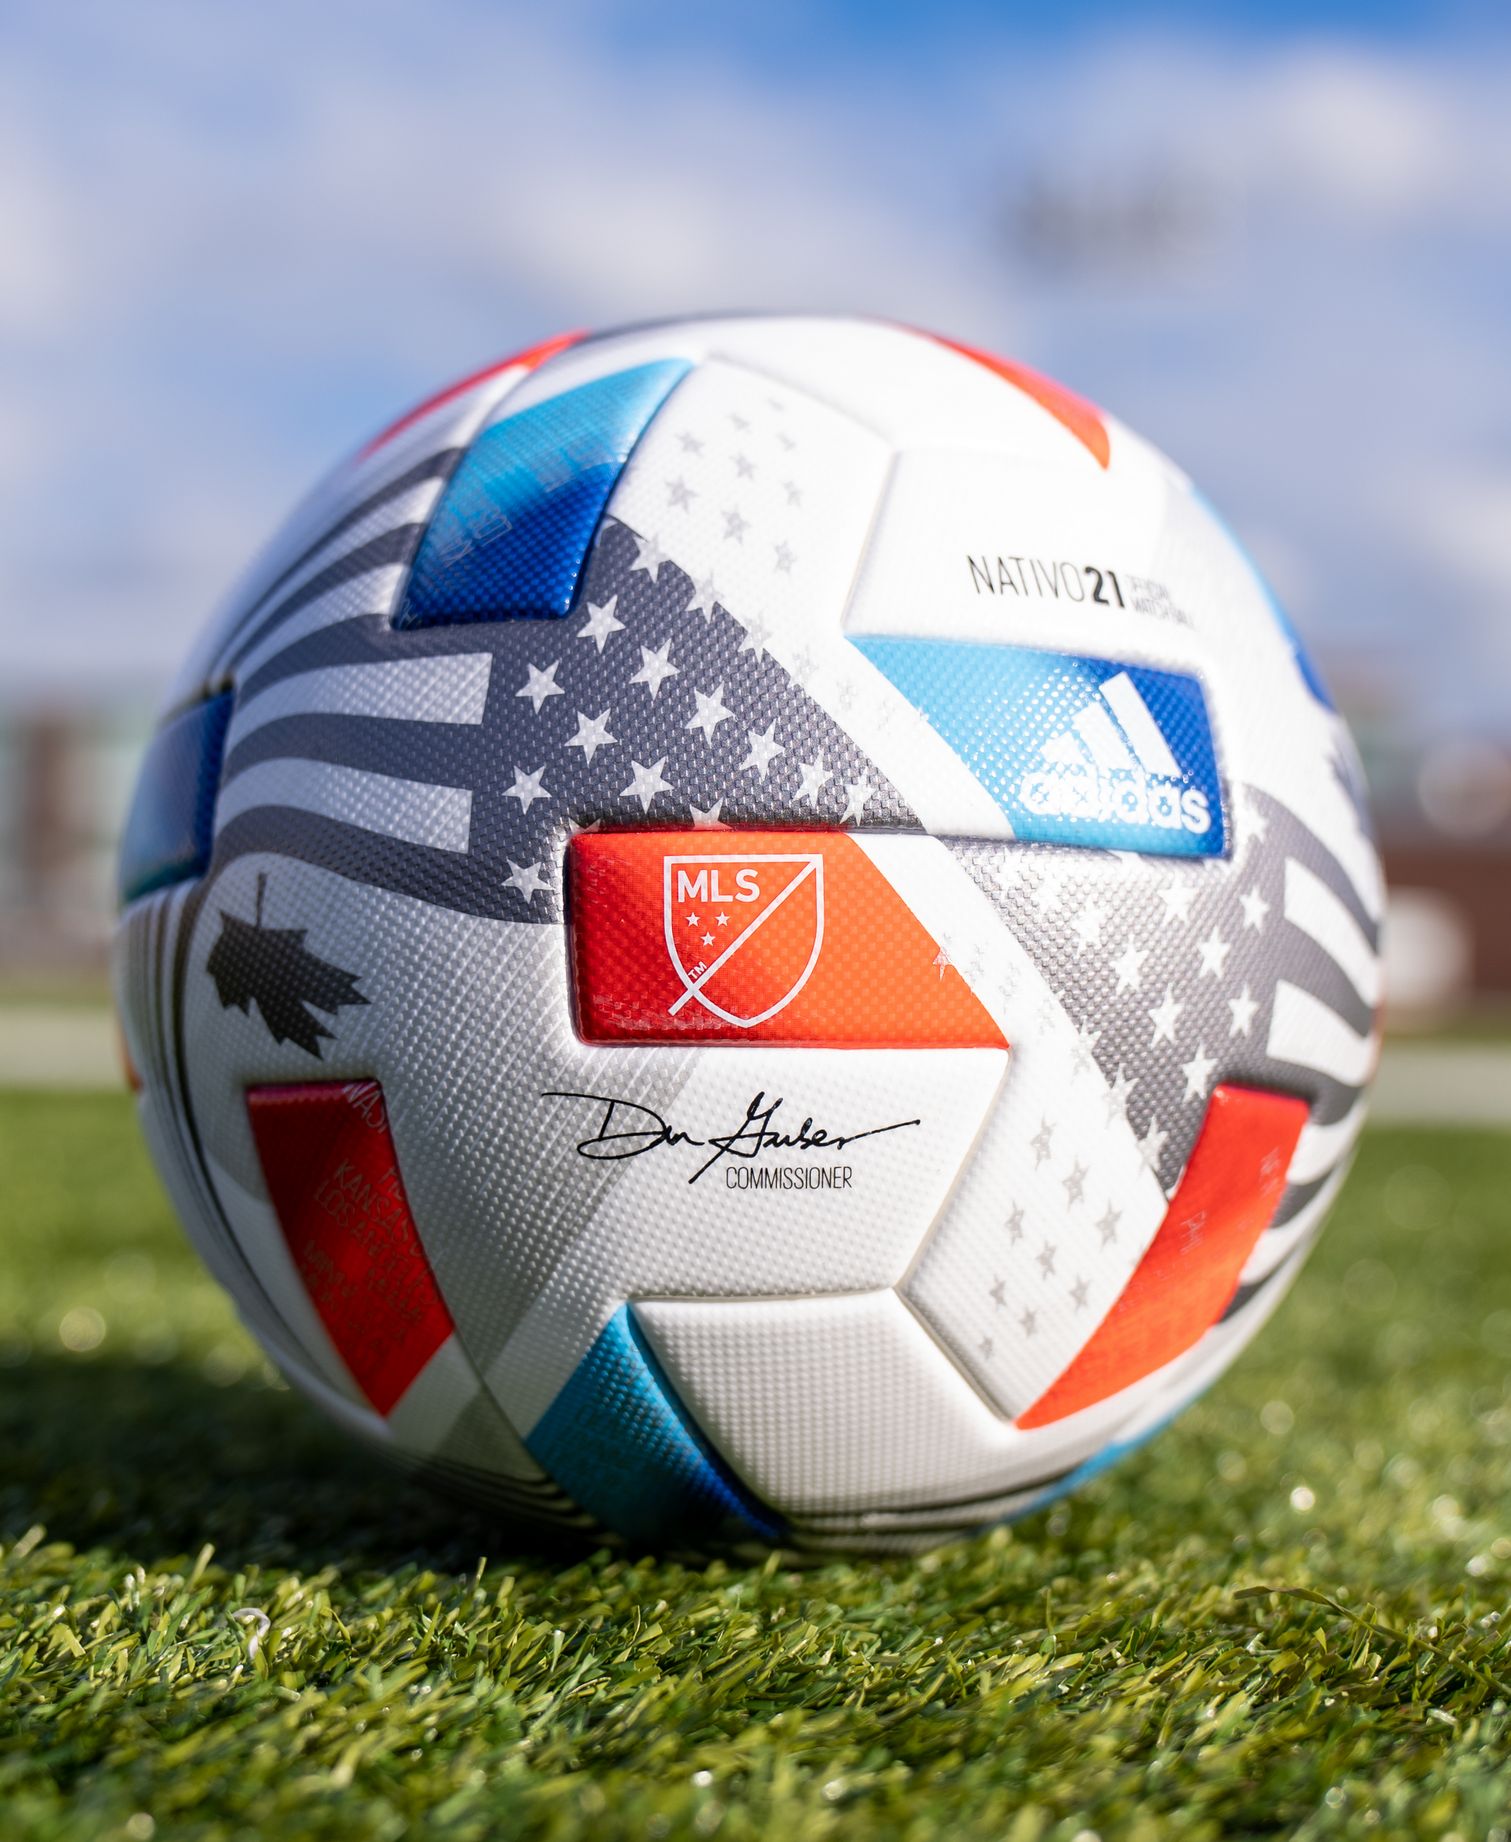 Balón adidas Nativo 21 MLS 2021